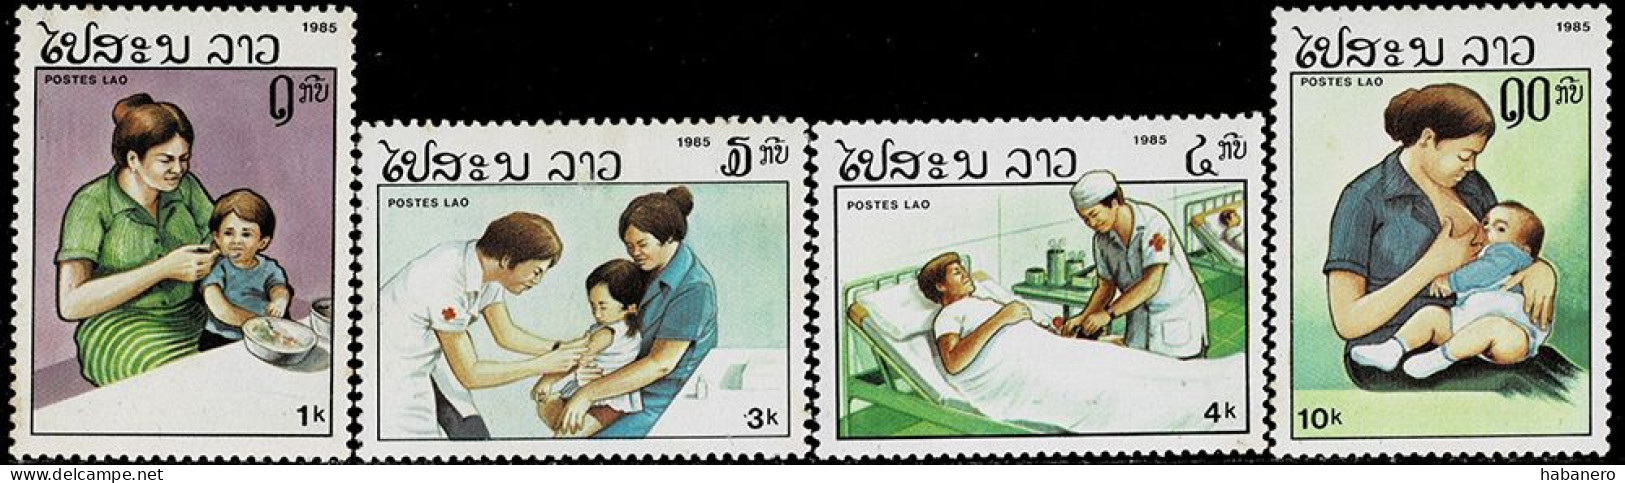 LAOS 1985 Mi 874-877 HEATH CARE MINT STAMPS ** - Laos